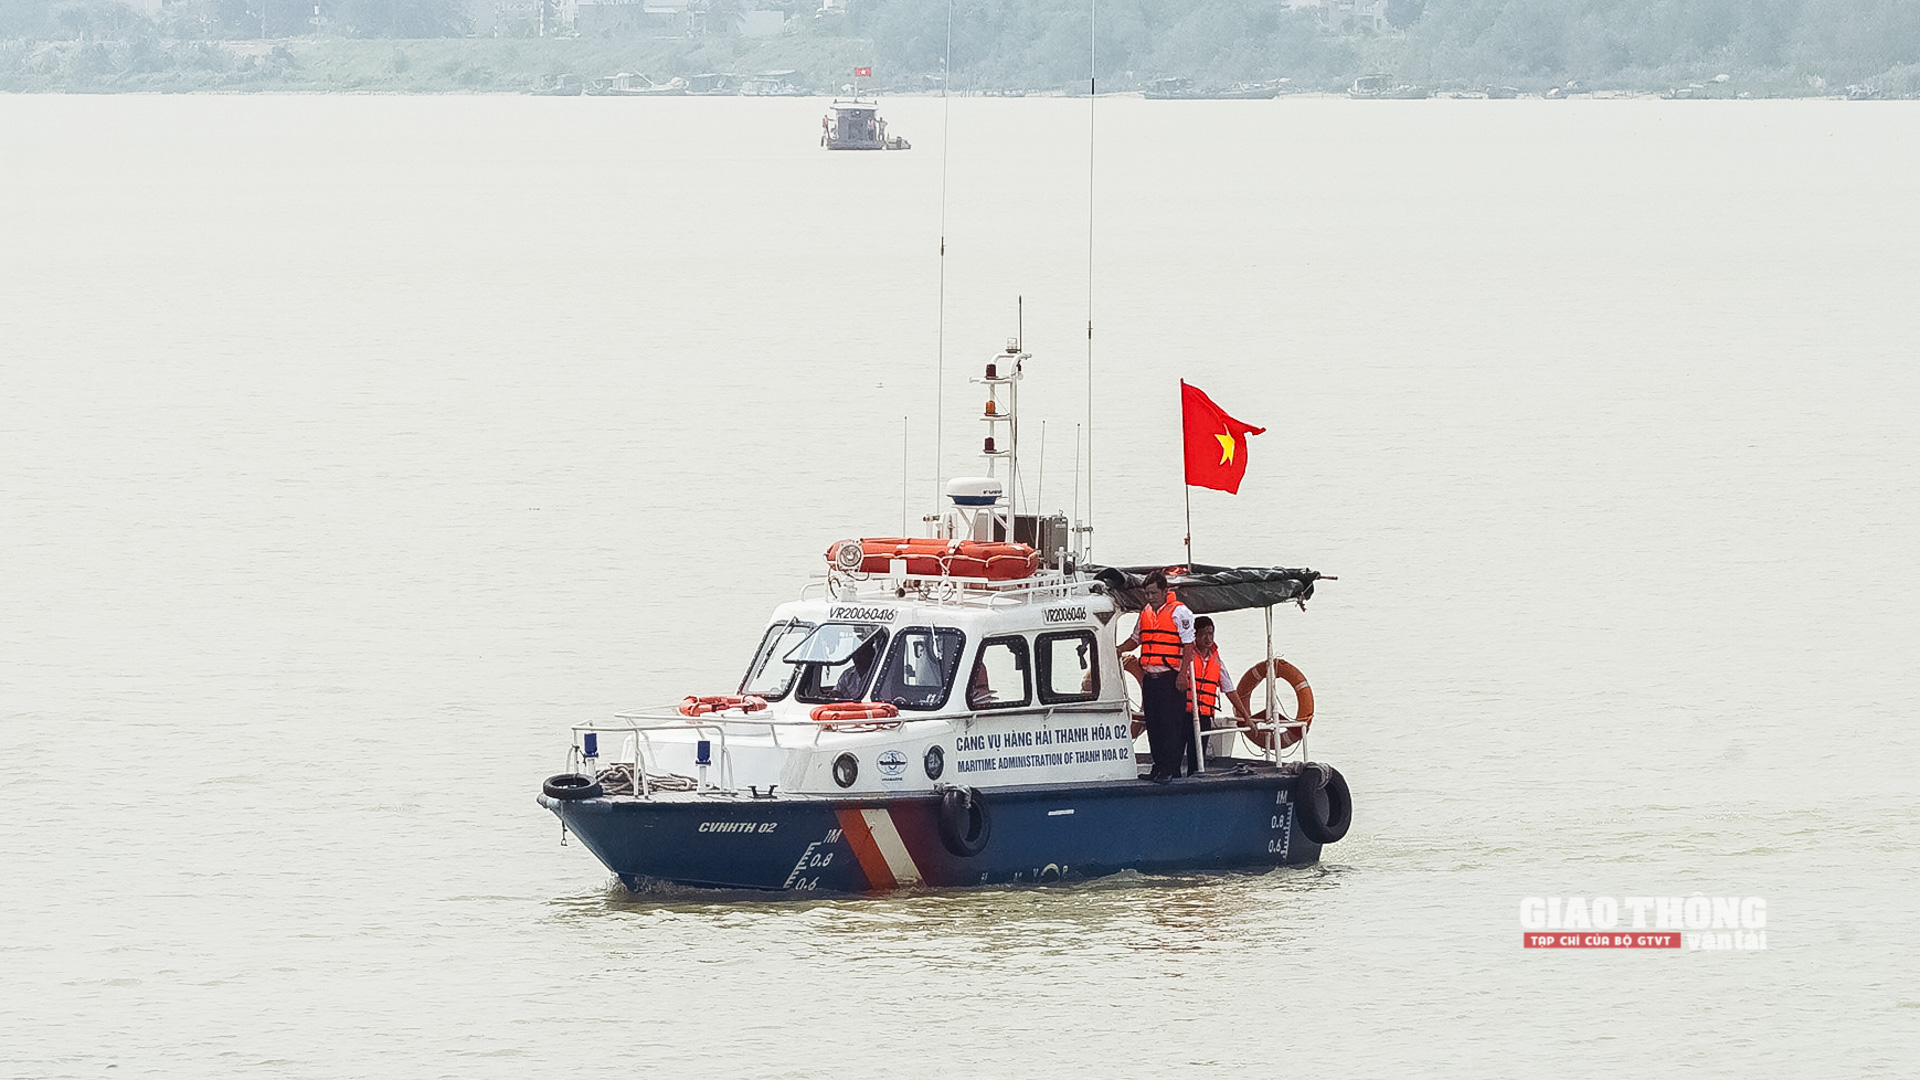 Tuyến ĐTNĐ quốc gia sông Mã tiếp giáp với tuyến hàng hải, Cảng vụ Hàng hải Thanh Hóa huy động 1 xuồng máy đến hiện trường tham gia phối hợp tìm kiếm cứu nạn.